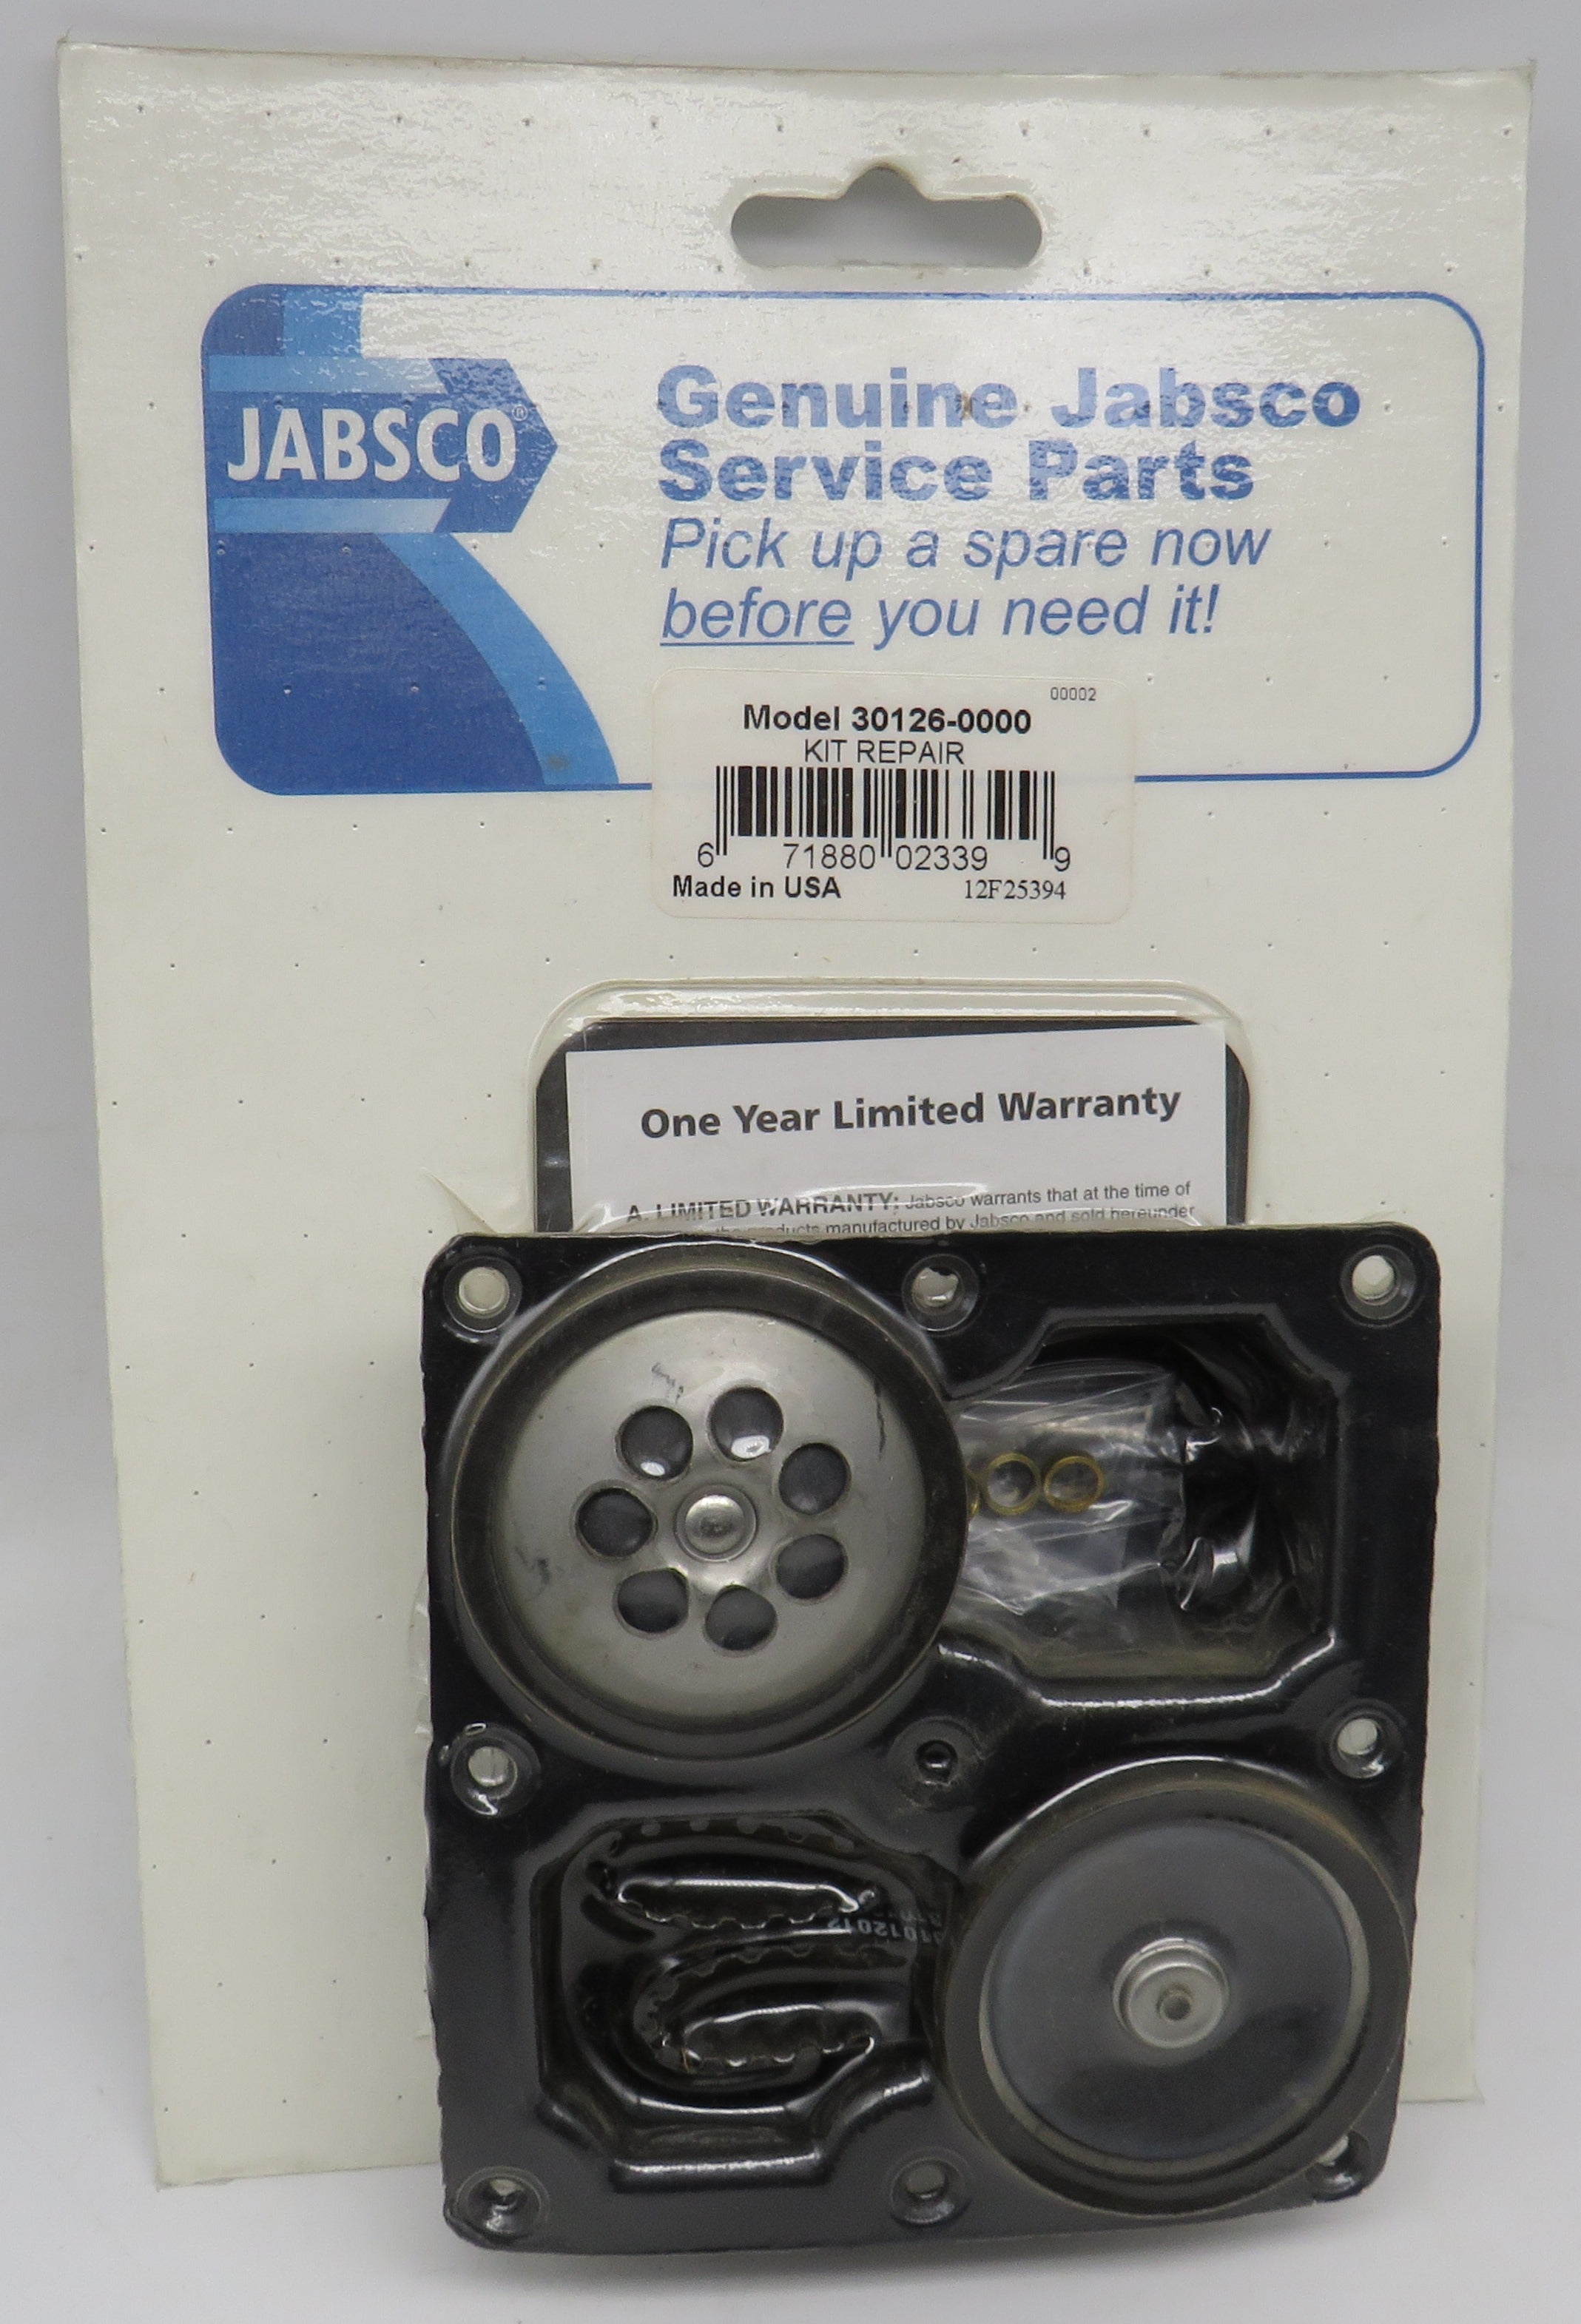 30126-0000 Jabsco Par Service Repair Kit For 36950 Series Pumps